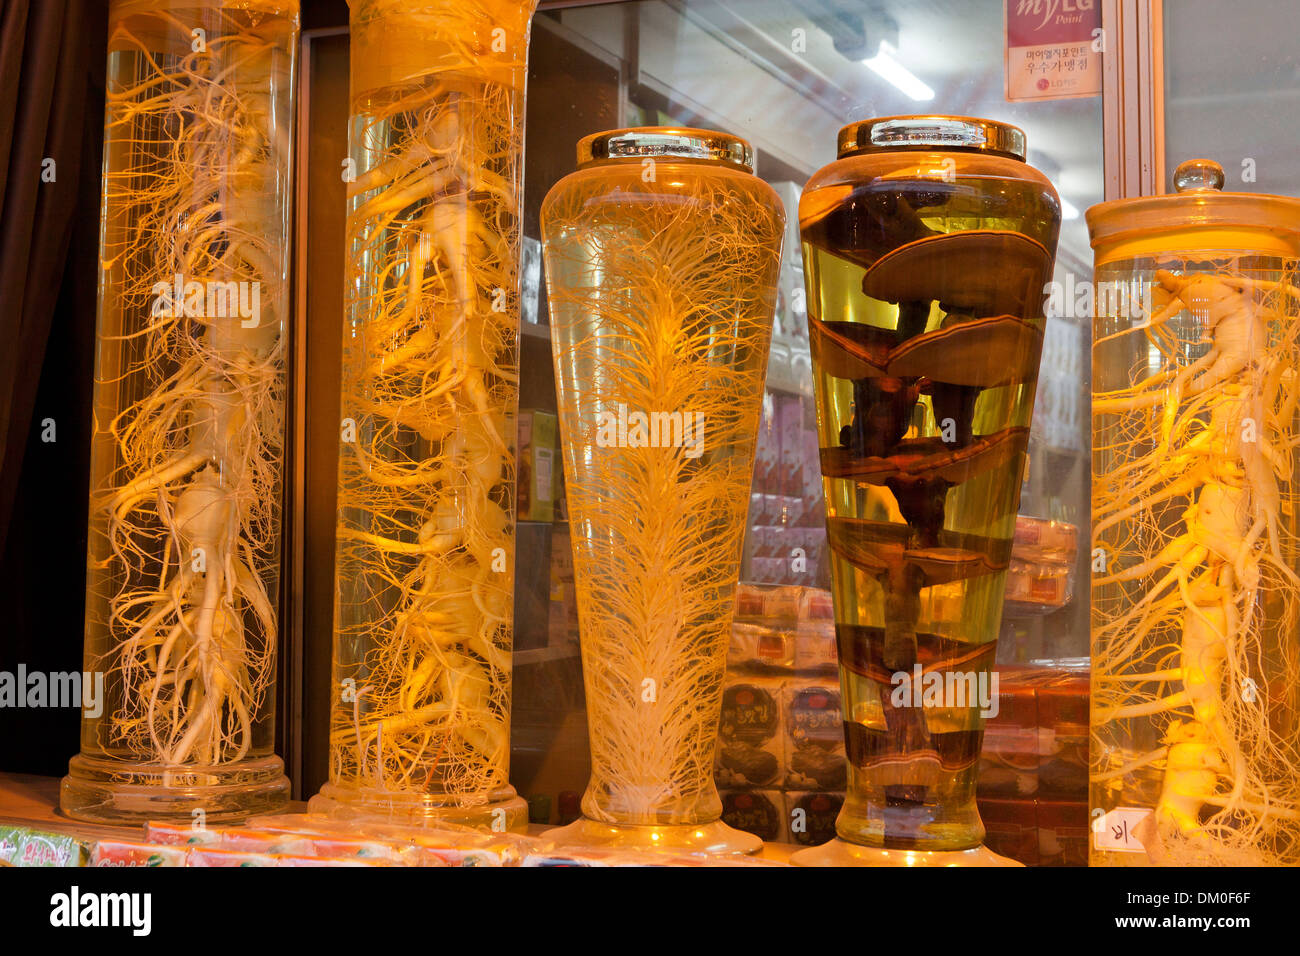 Insamju - Tradizionale Coreano alcol medicinale fatta con il ginseng e yungji (lingzhi) funghi - Seoul, Corea del Sud Foto Stock